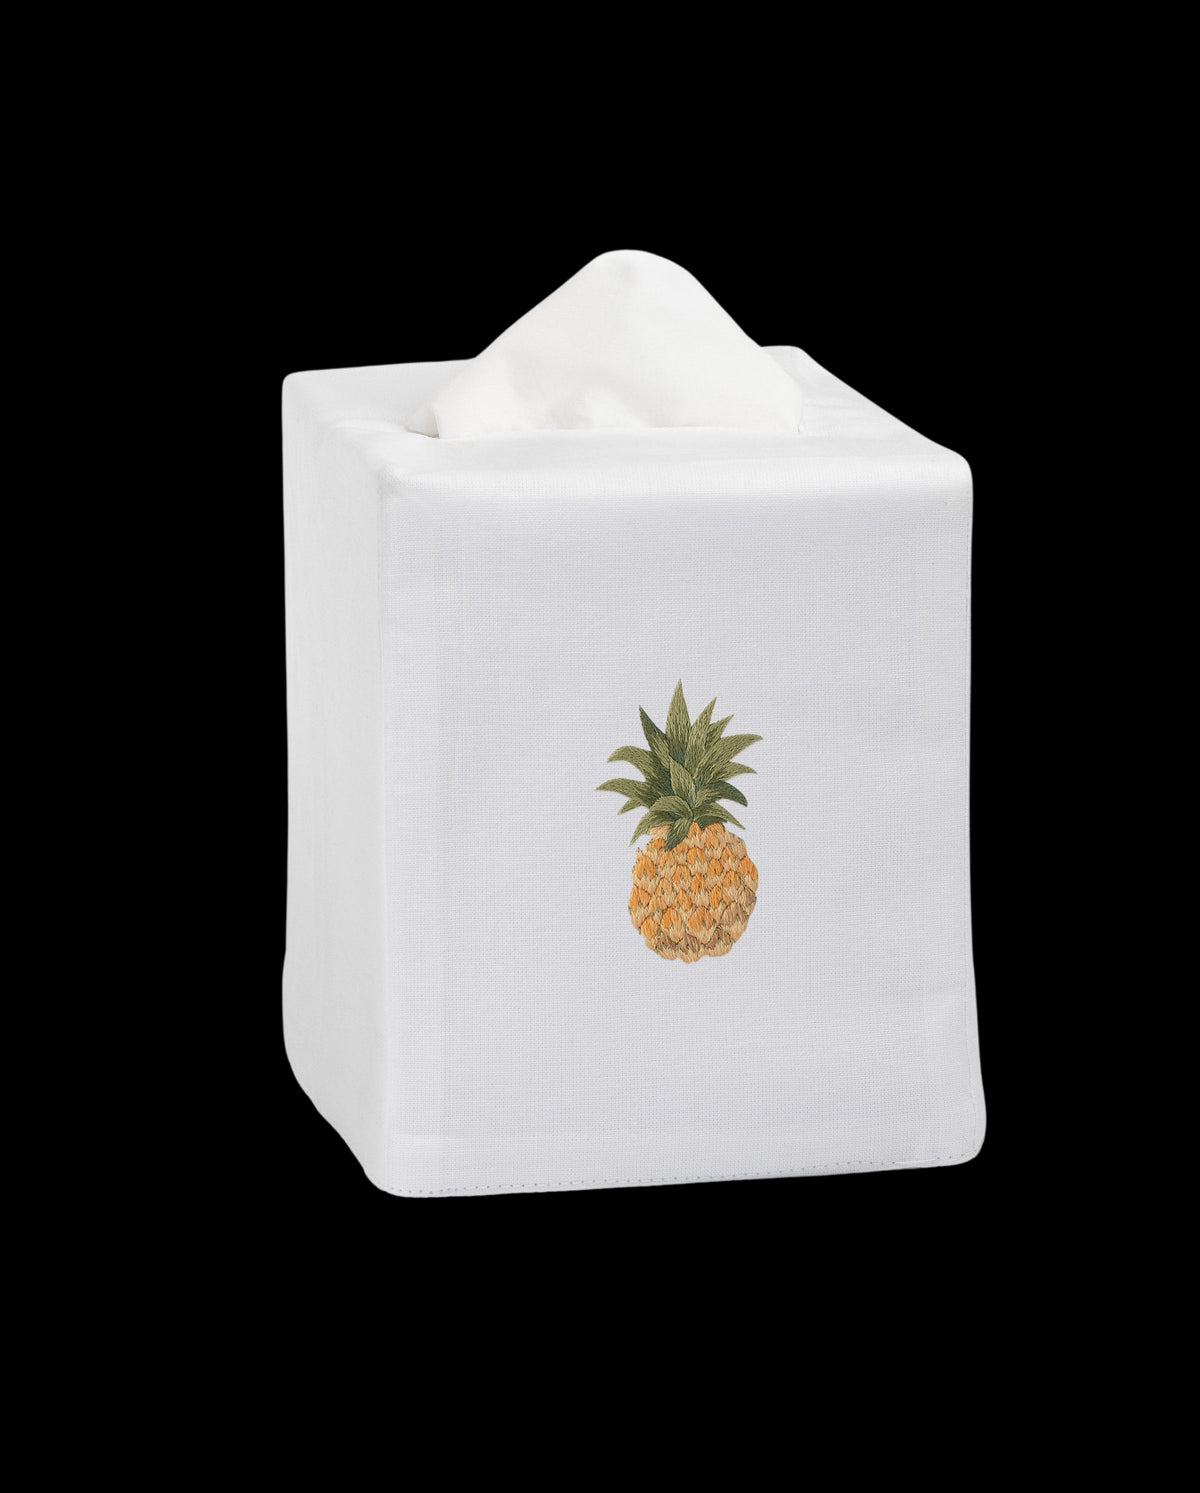 Pineapple Modern Tissue Box Cover